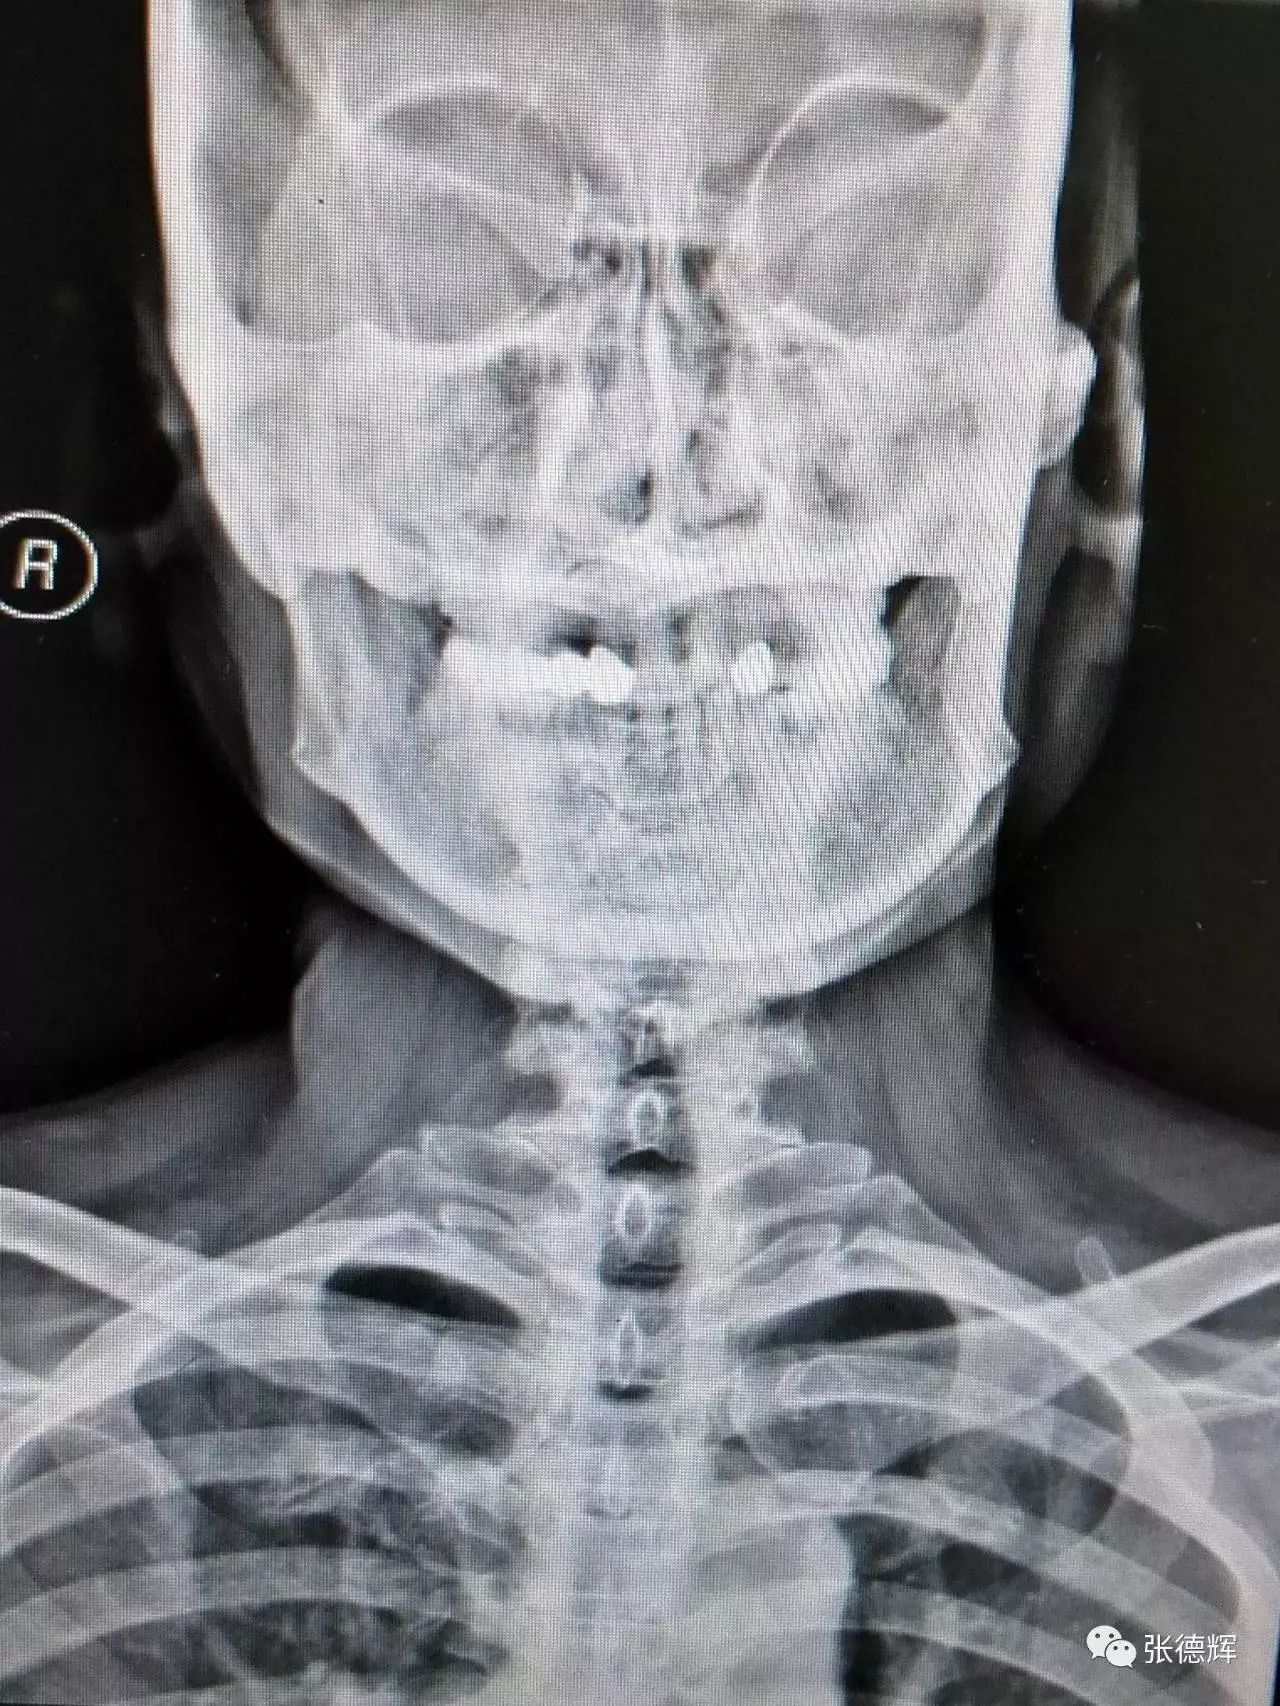 颈椎mri矢状位:颈4-5大块脱出,脊髓受压严重;伴有颅底凹陷畸形 颈椎